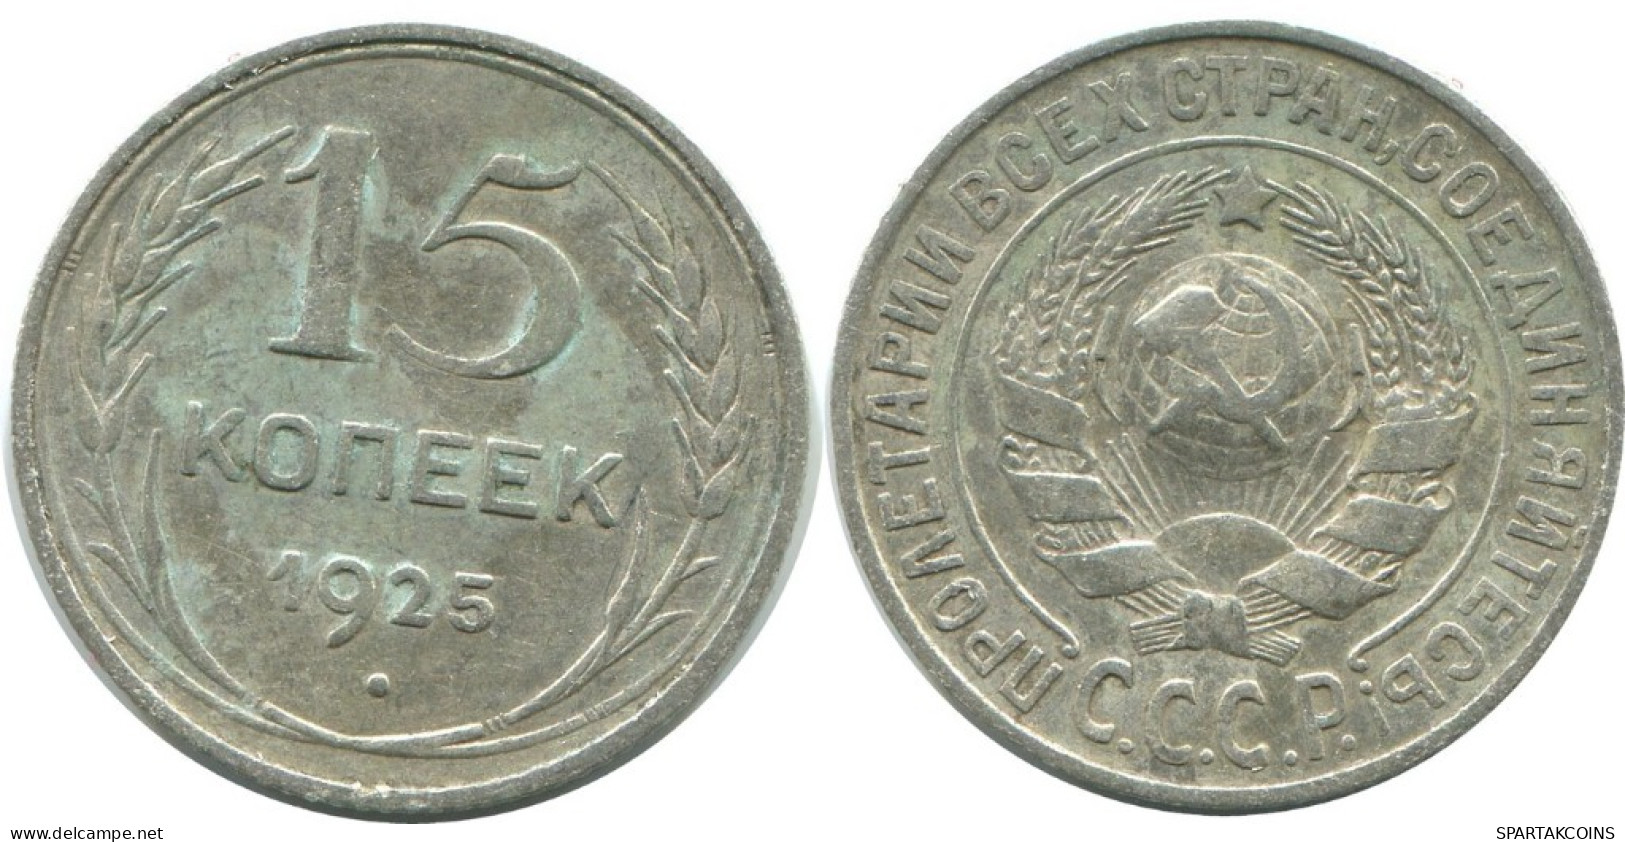 15 KOPEKS 1925 RUSSLAND RUSSIA USSR SILBER Münze HIGH GRADE #AF259.4.D.A - Russia